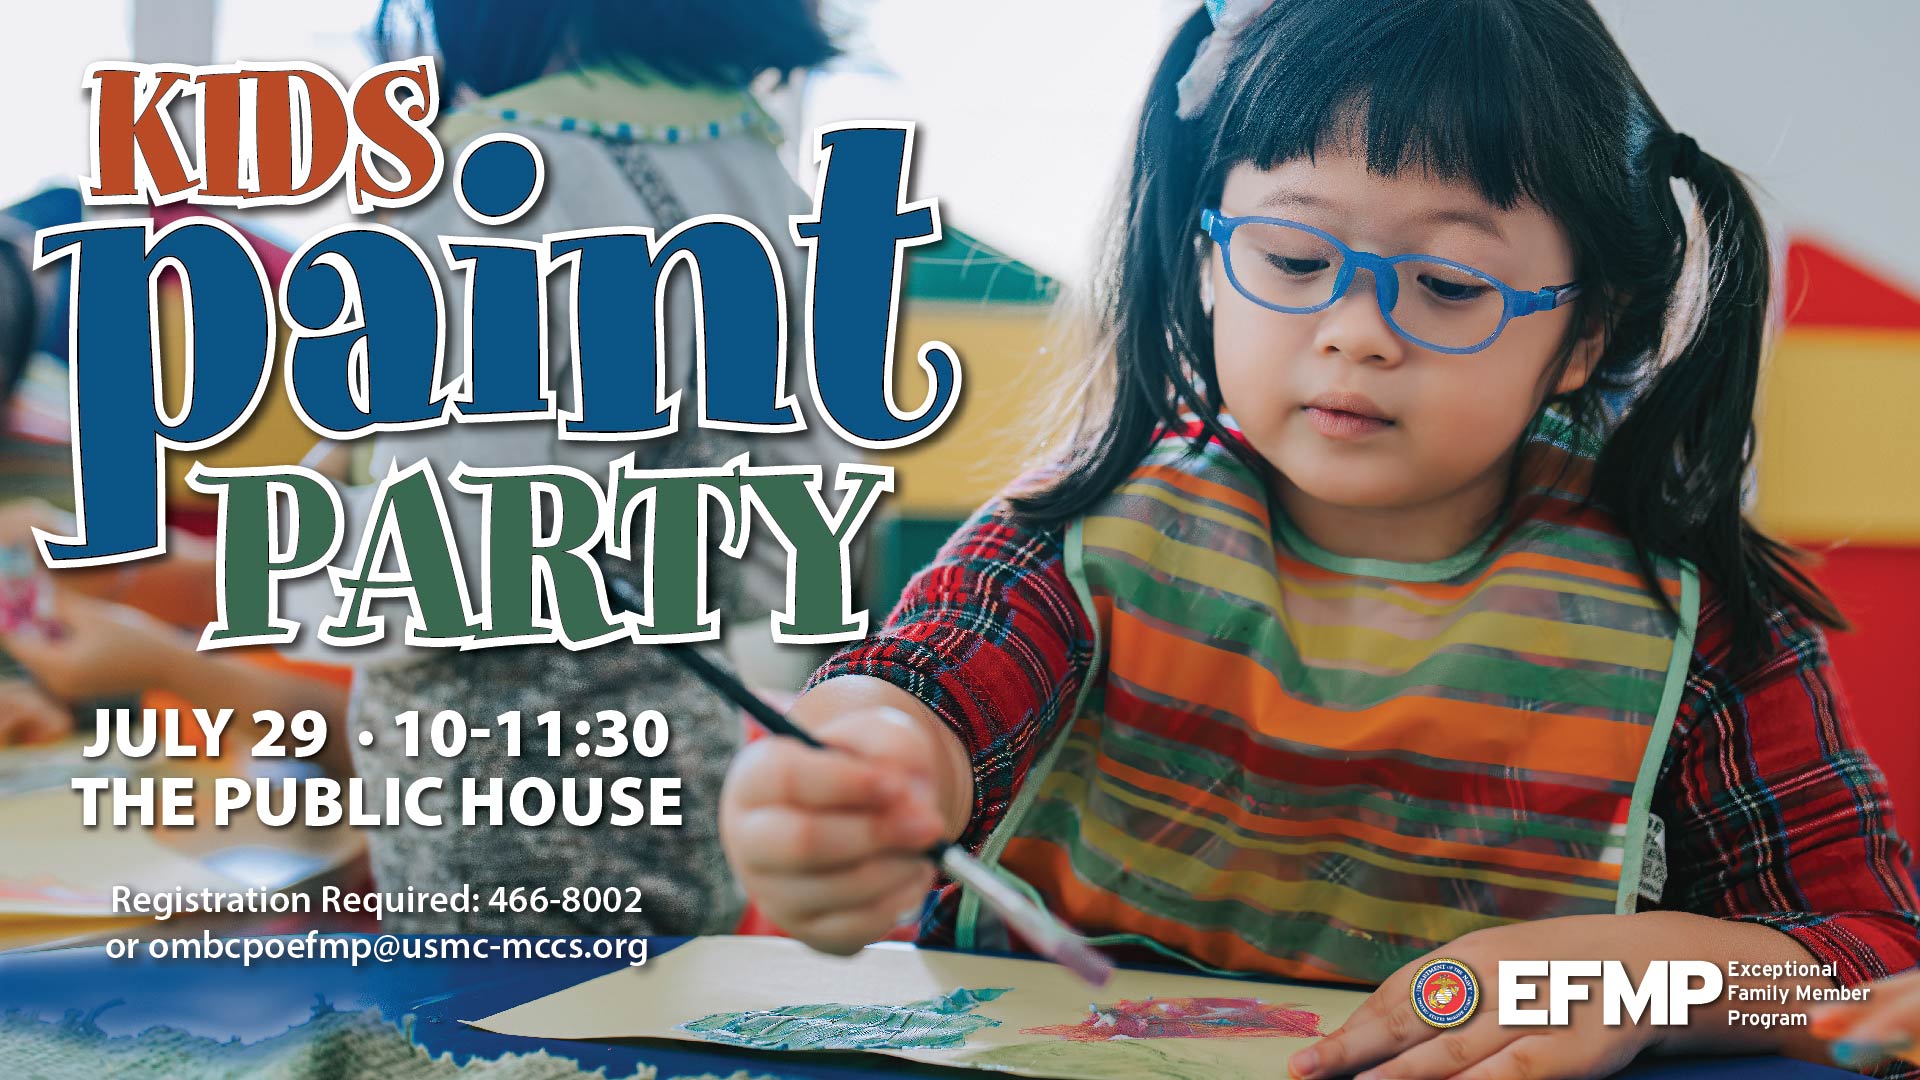 Kids Paint Party